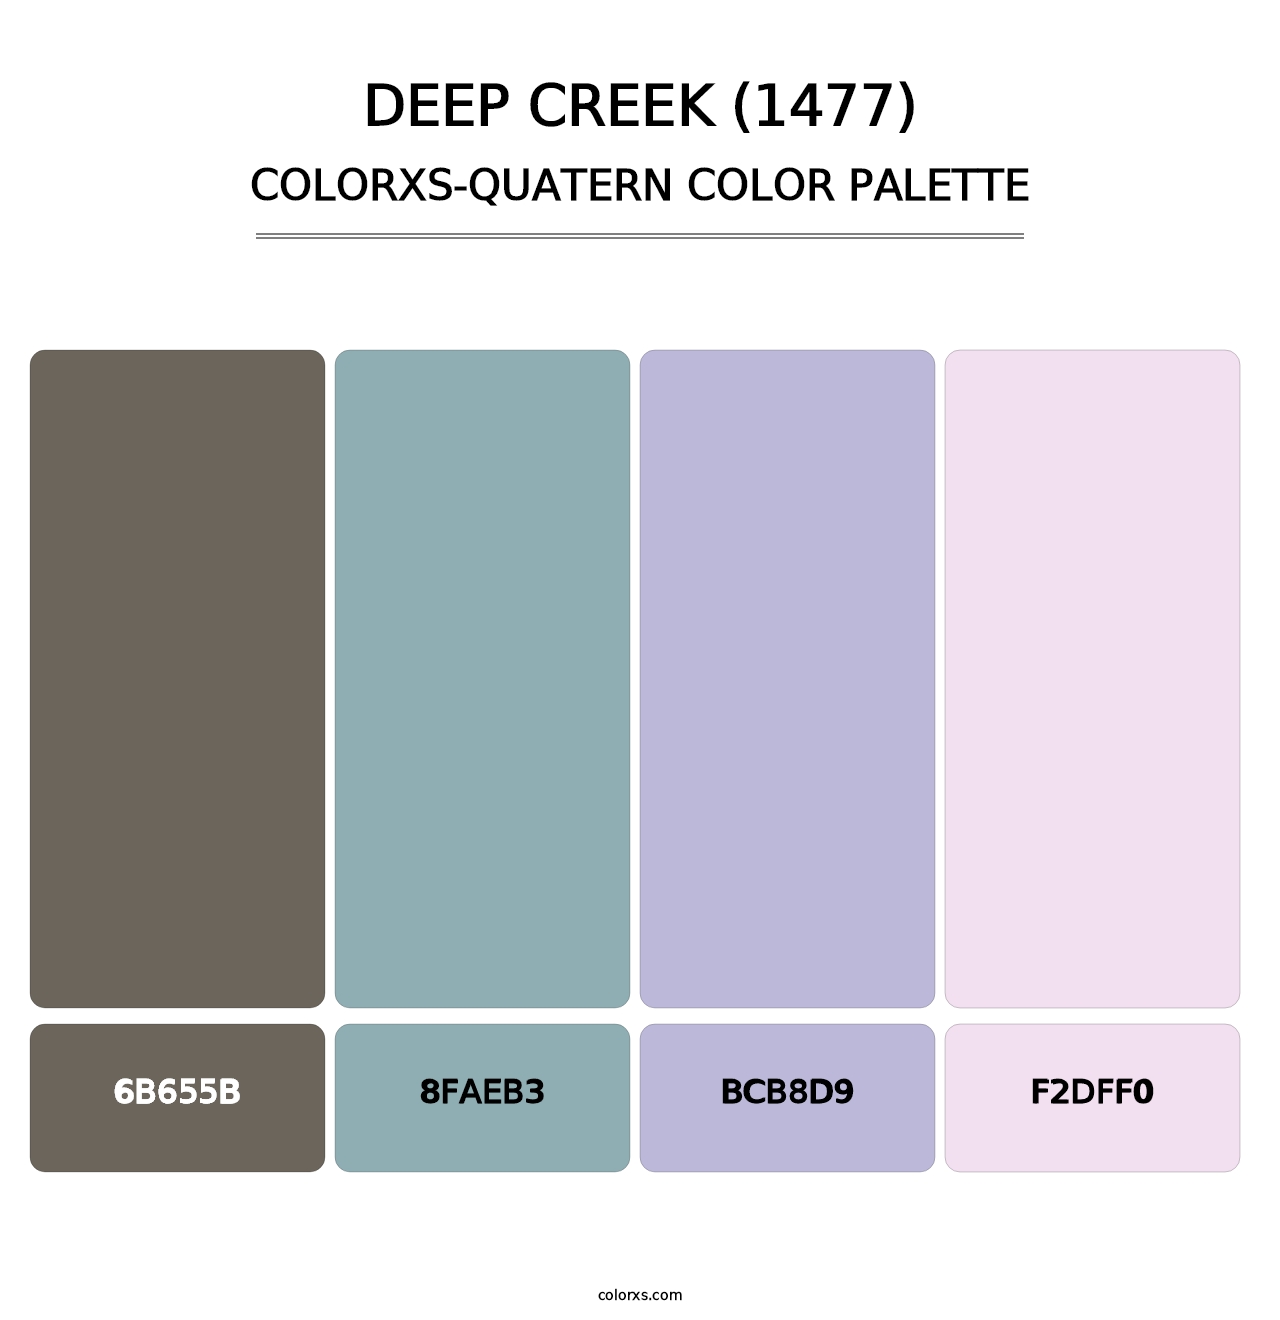 Deep Creek (1477) - Colorxs Quatern Palette